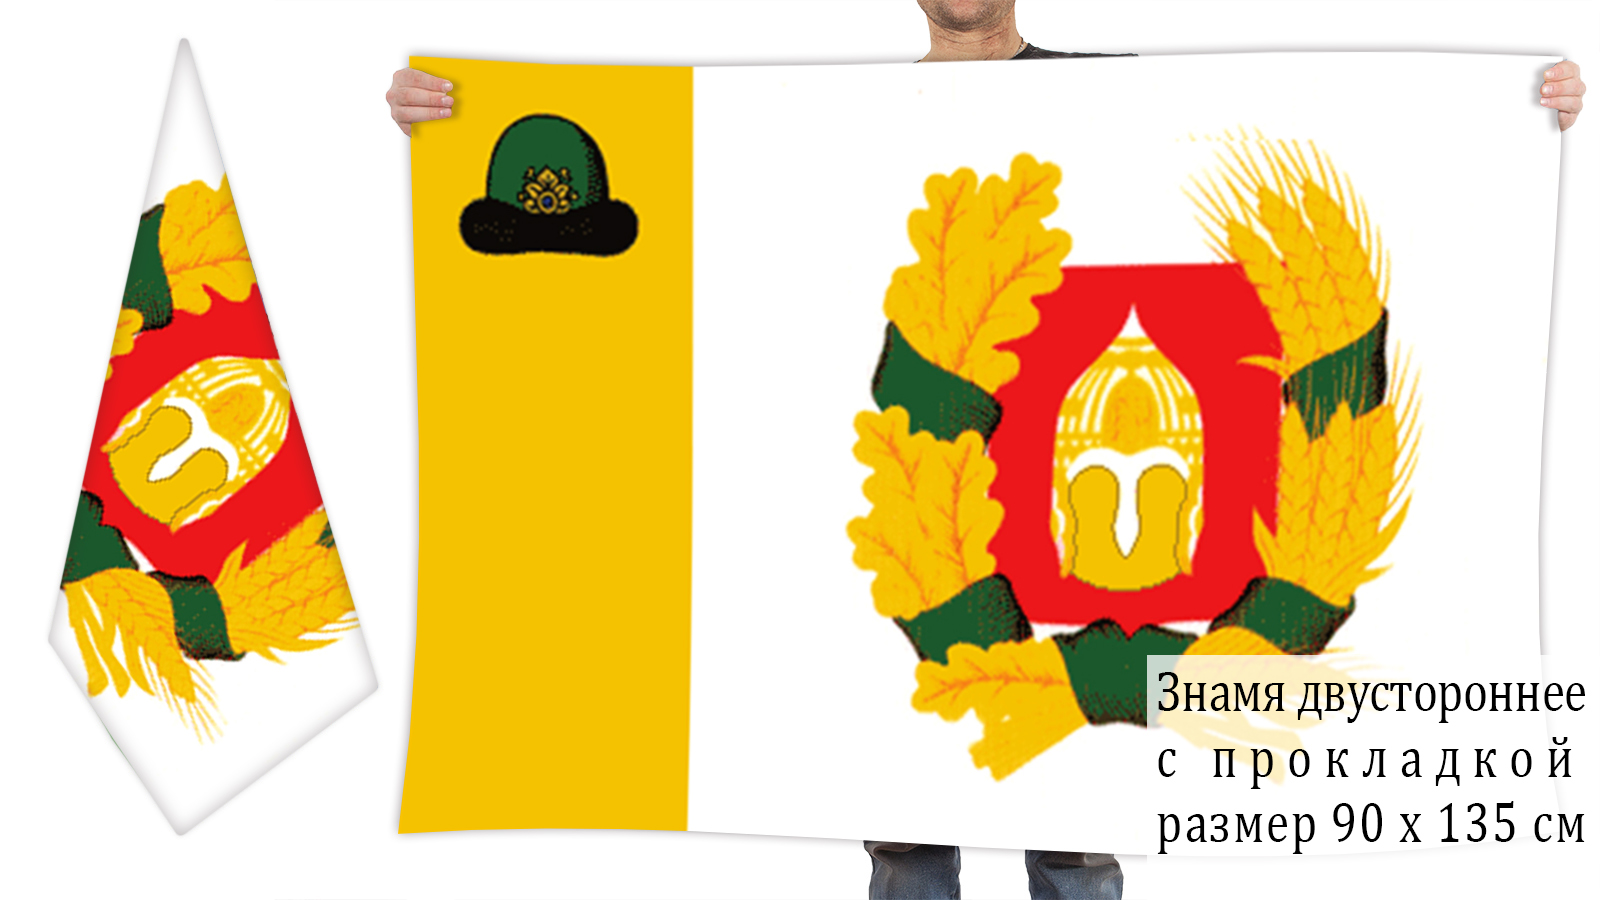 Двусторонний флаг Александро-Невского района